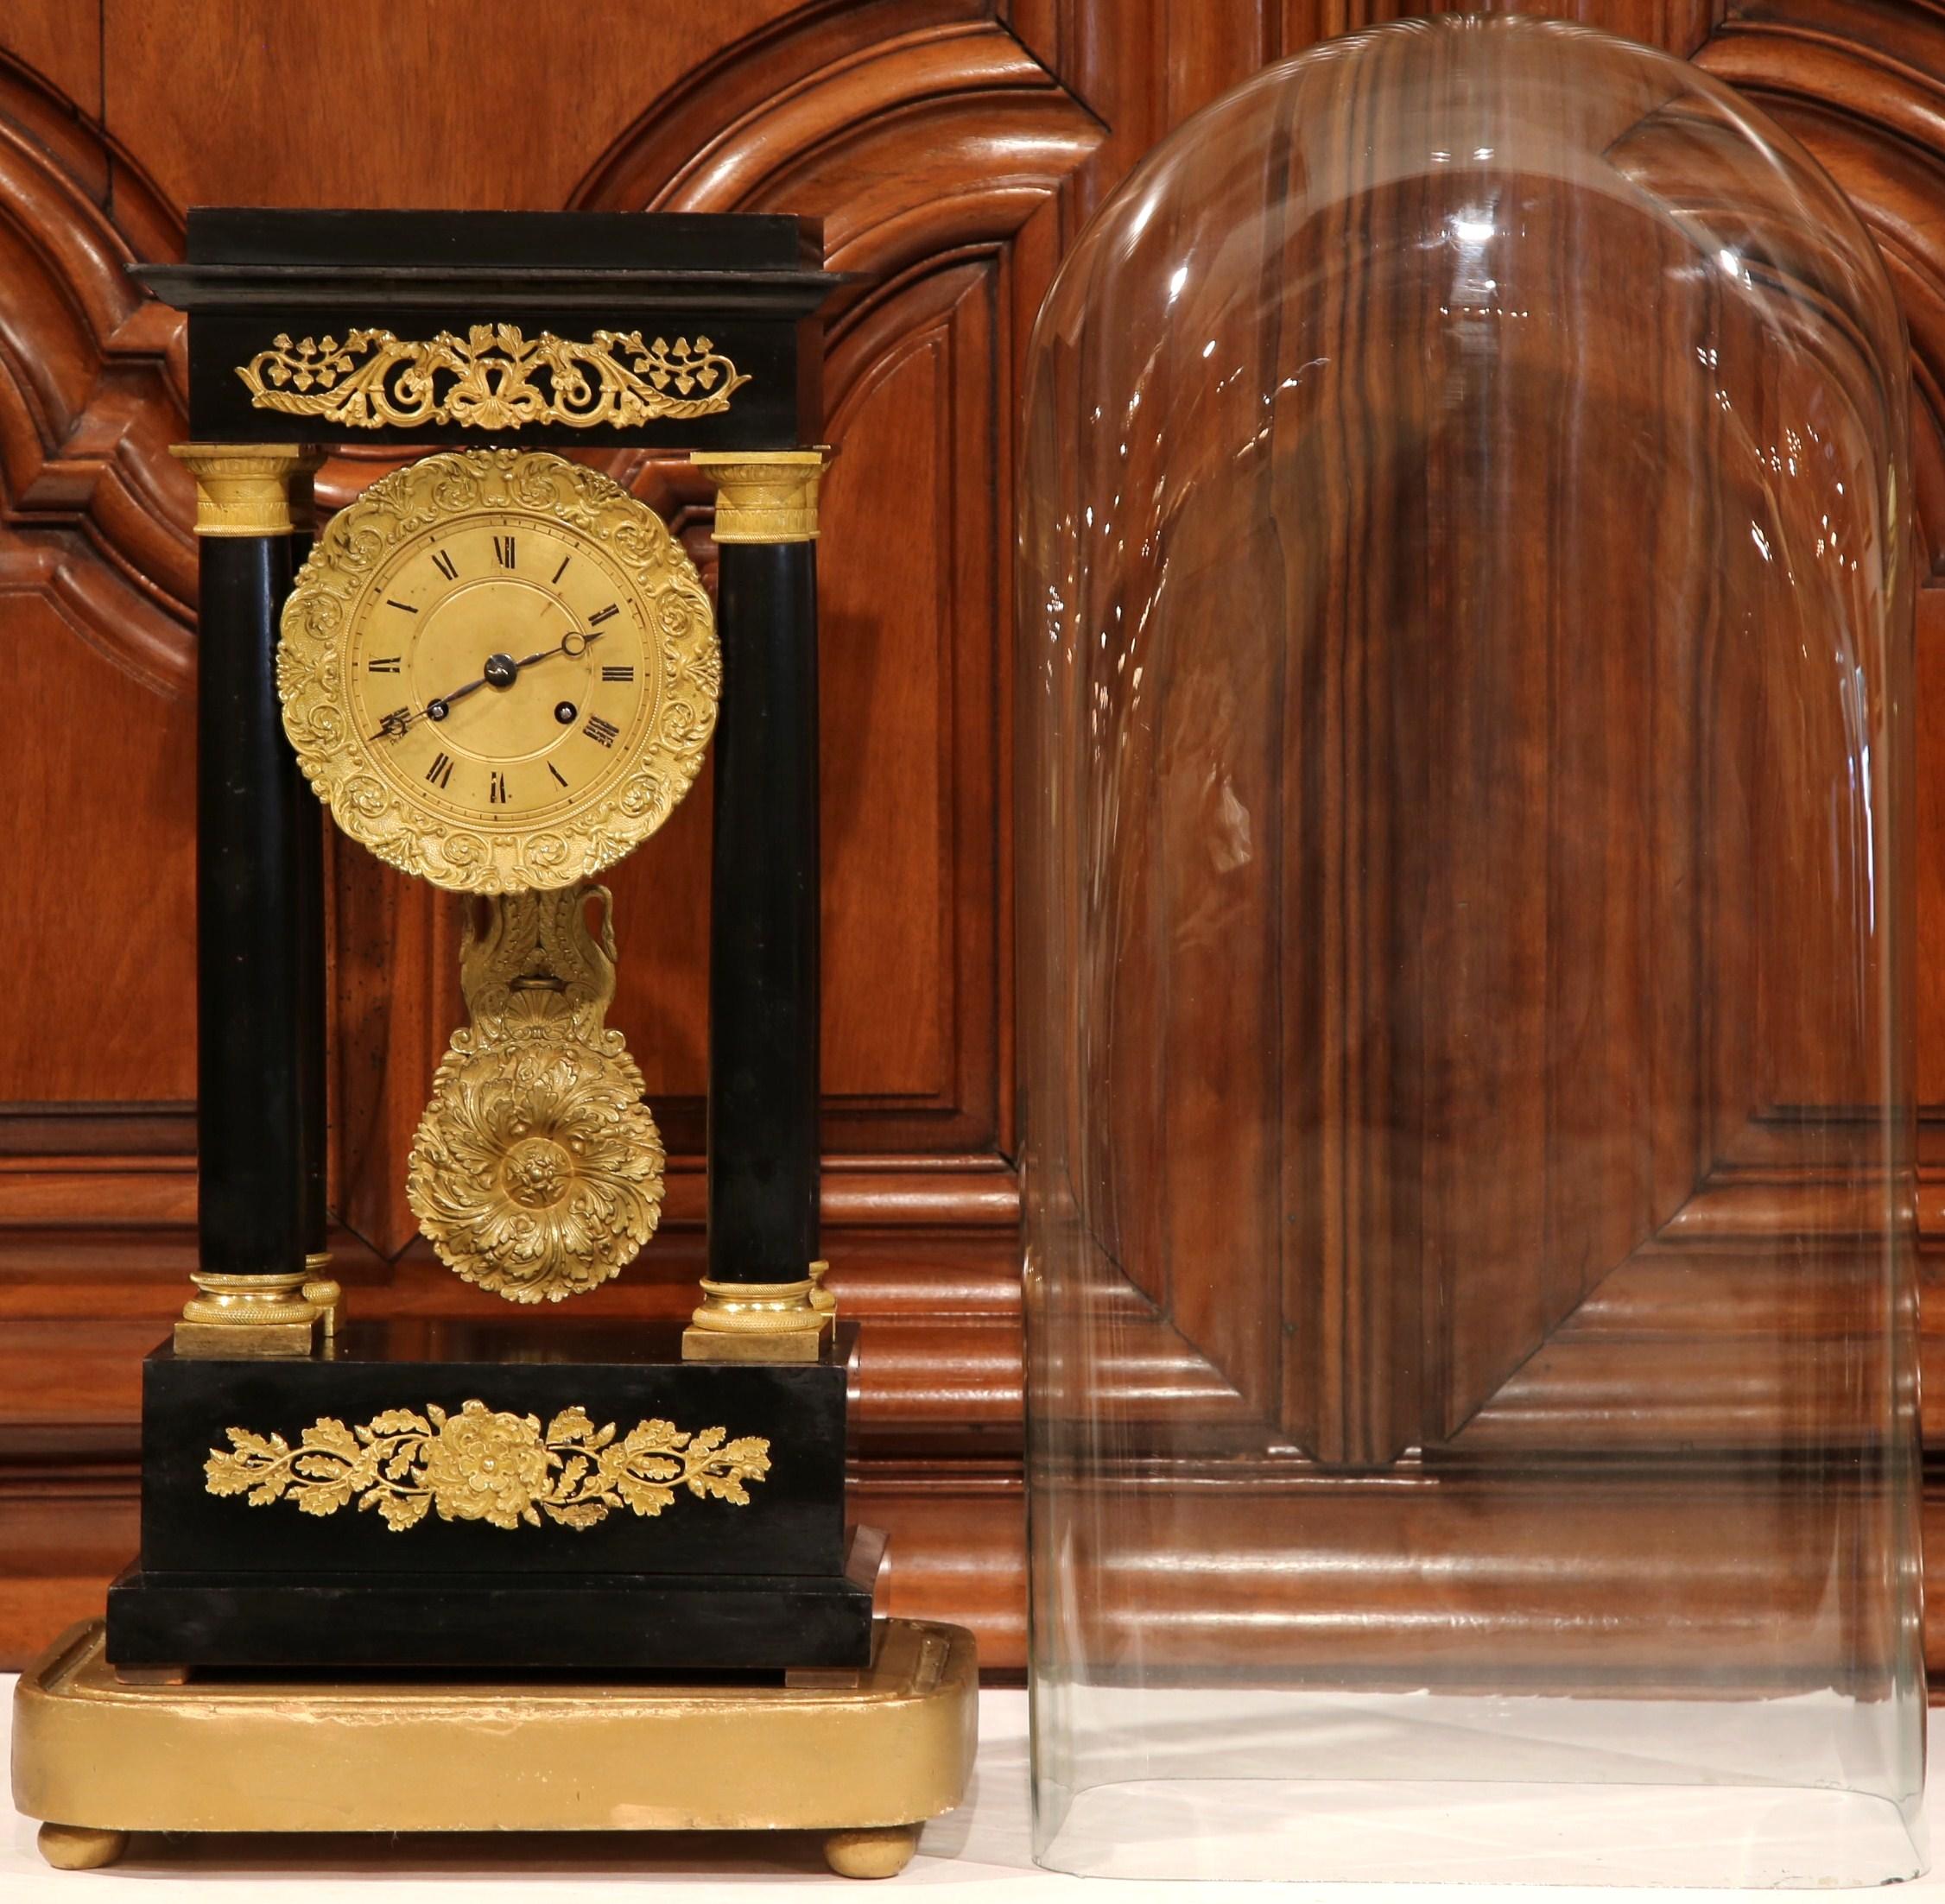 Gardez l'heure dans votre bureau, votre cabinet de travail ou sur votre cheminée avec cette élégante horloge ancienne dans son dôme en verre d'origine. Fabriquée en France vers 1870, la pendule portique repose sur une base en bois doré avec de